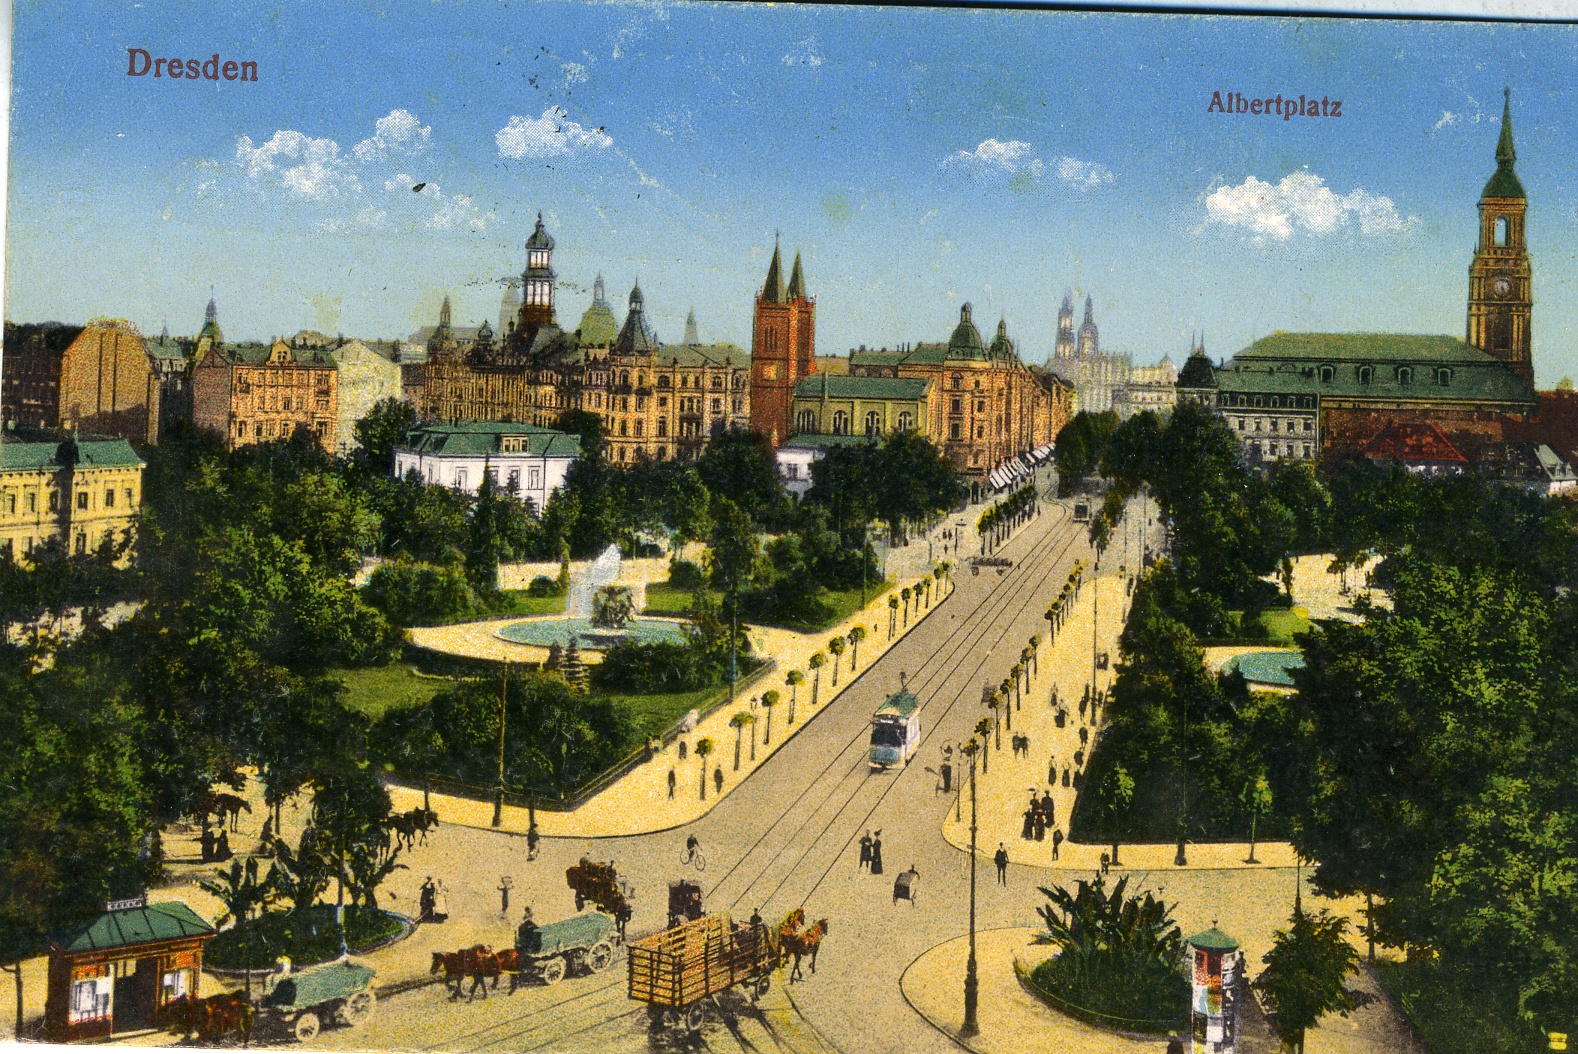 Postkarte "Albertplatz, Dresden" (Historisches Museum der Pfalz, Speyer CC BY)